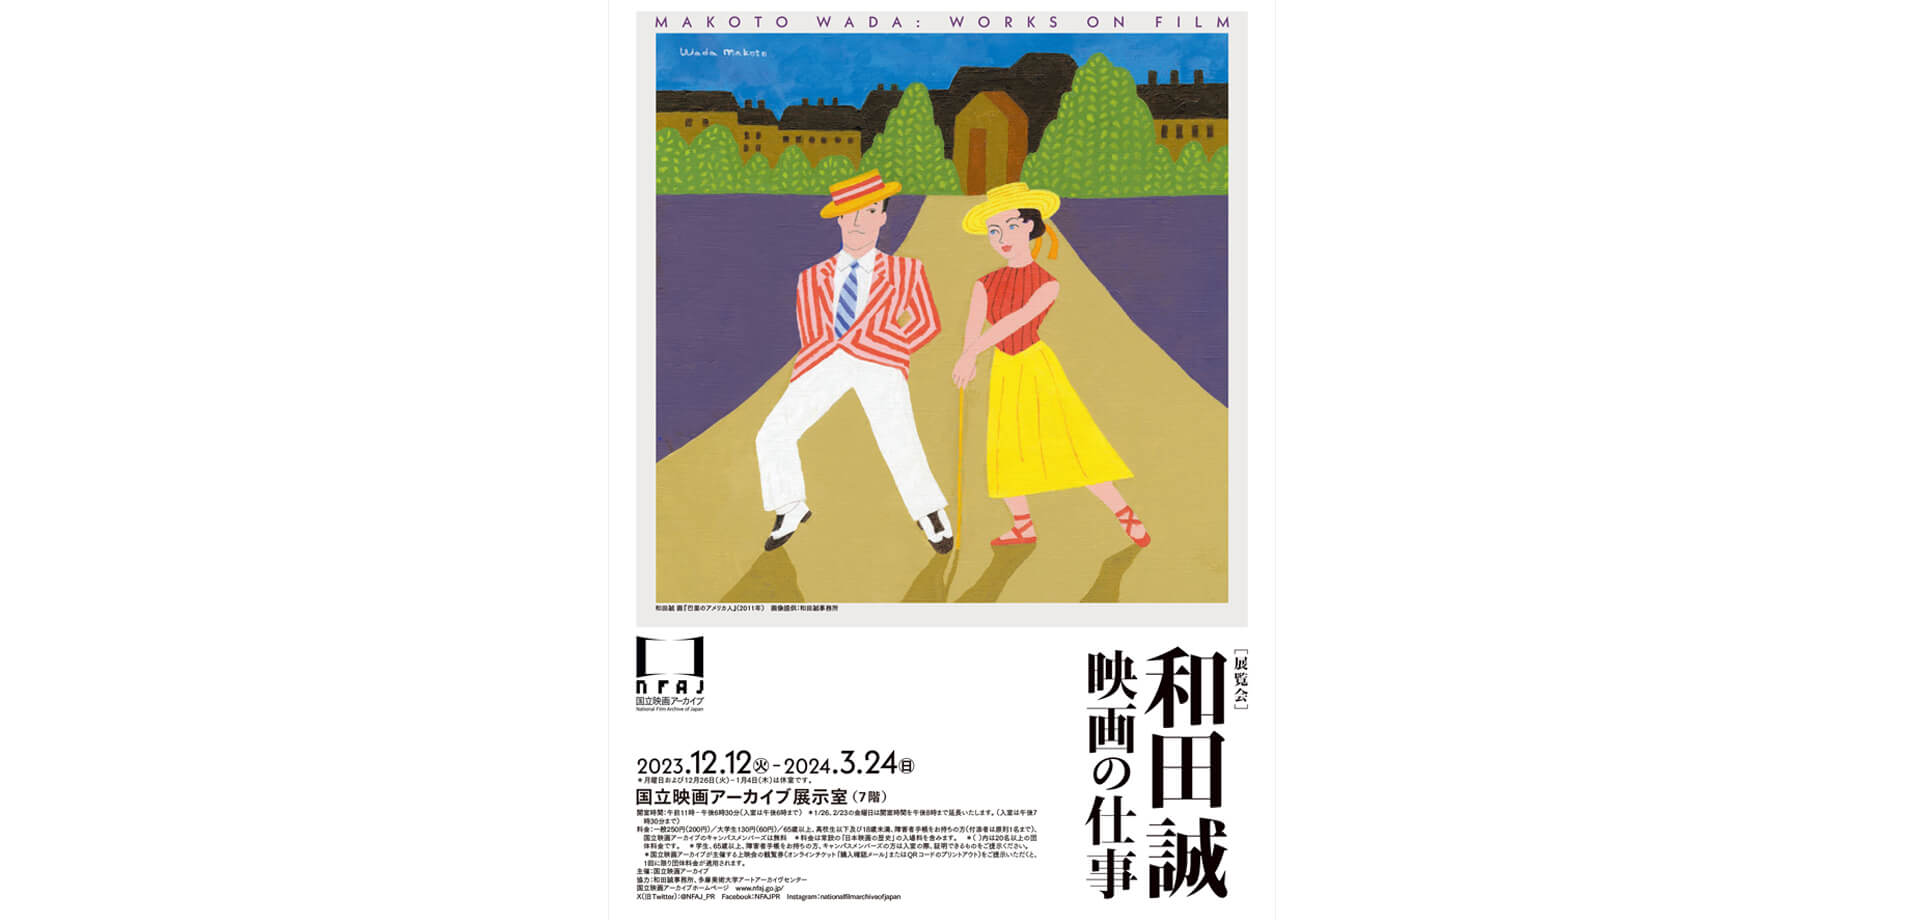 国立映画アーカイブ 展覧会「和田誠 映画の仕事」